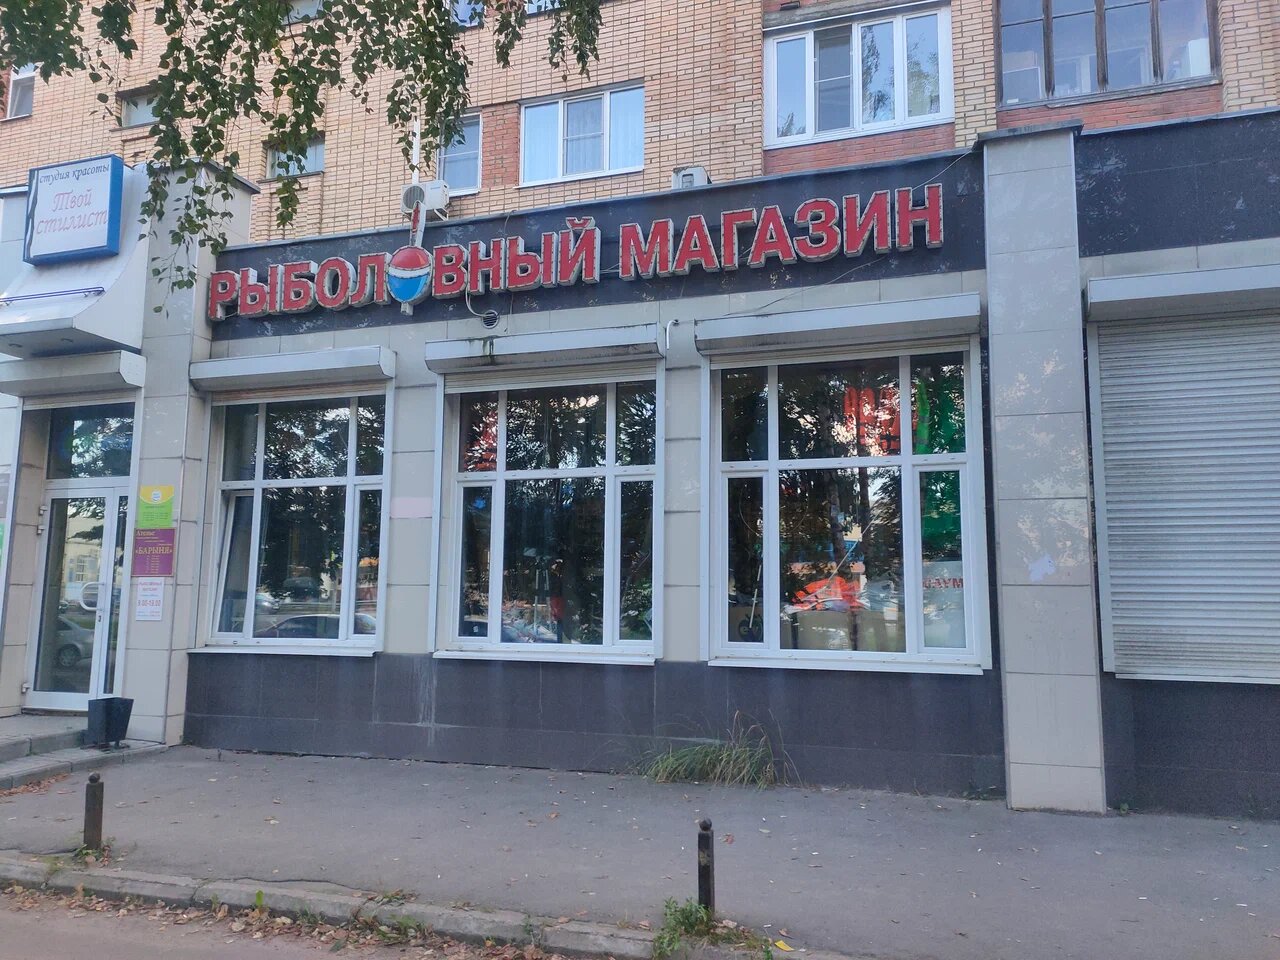 Расположение "Рыболовного магазина" на Октябрьской Революции в Коломне